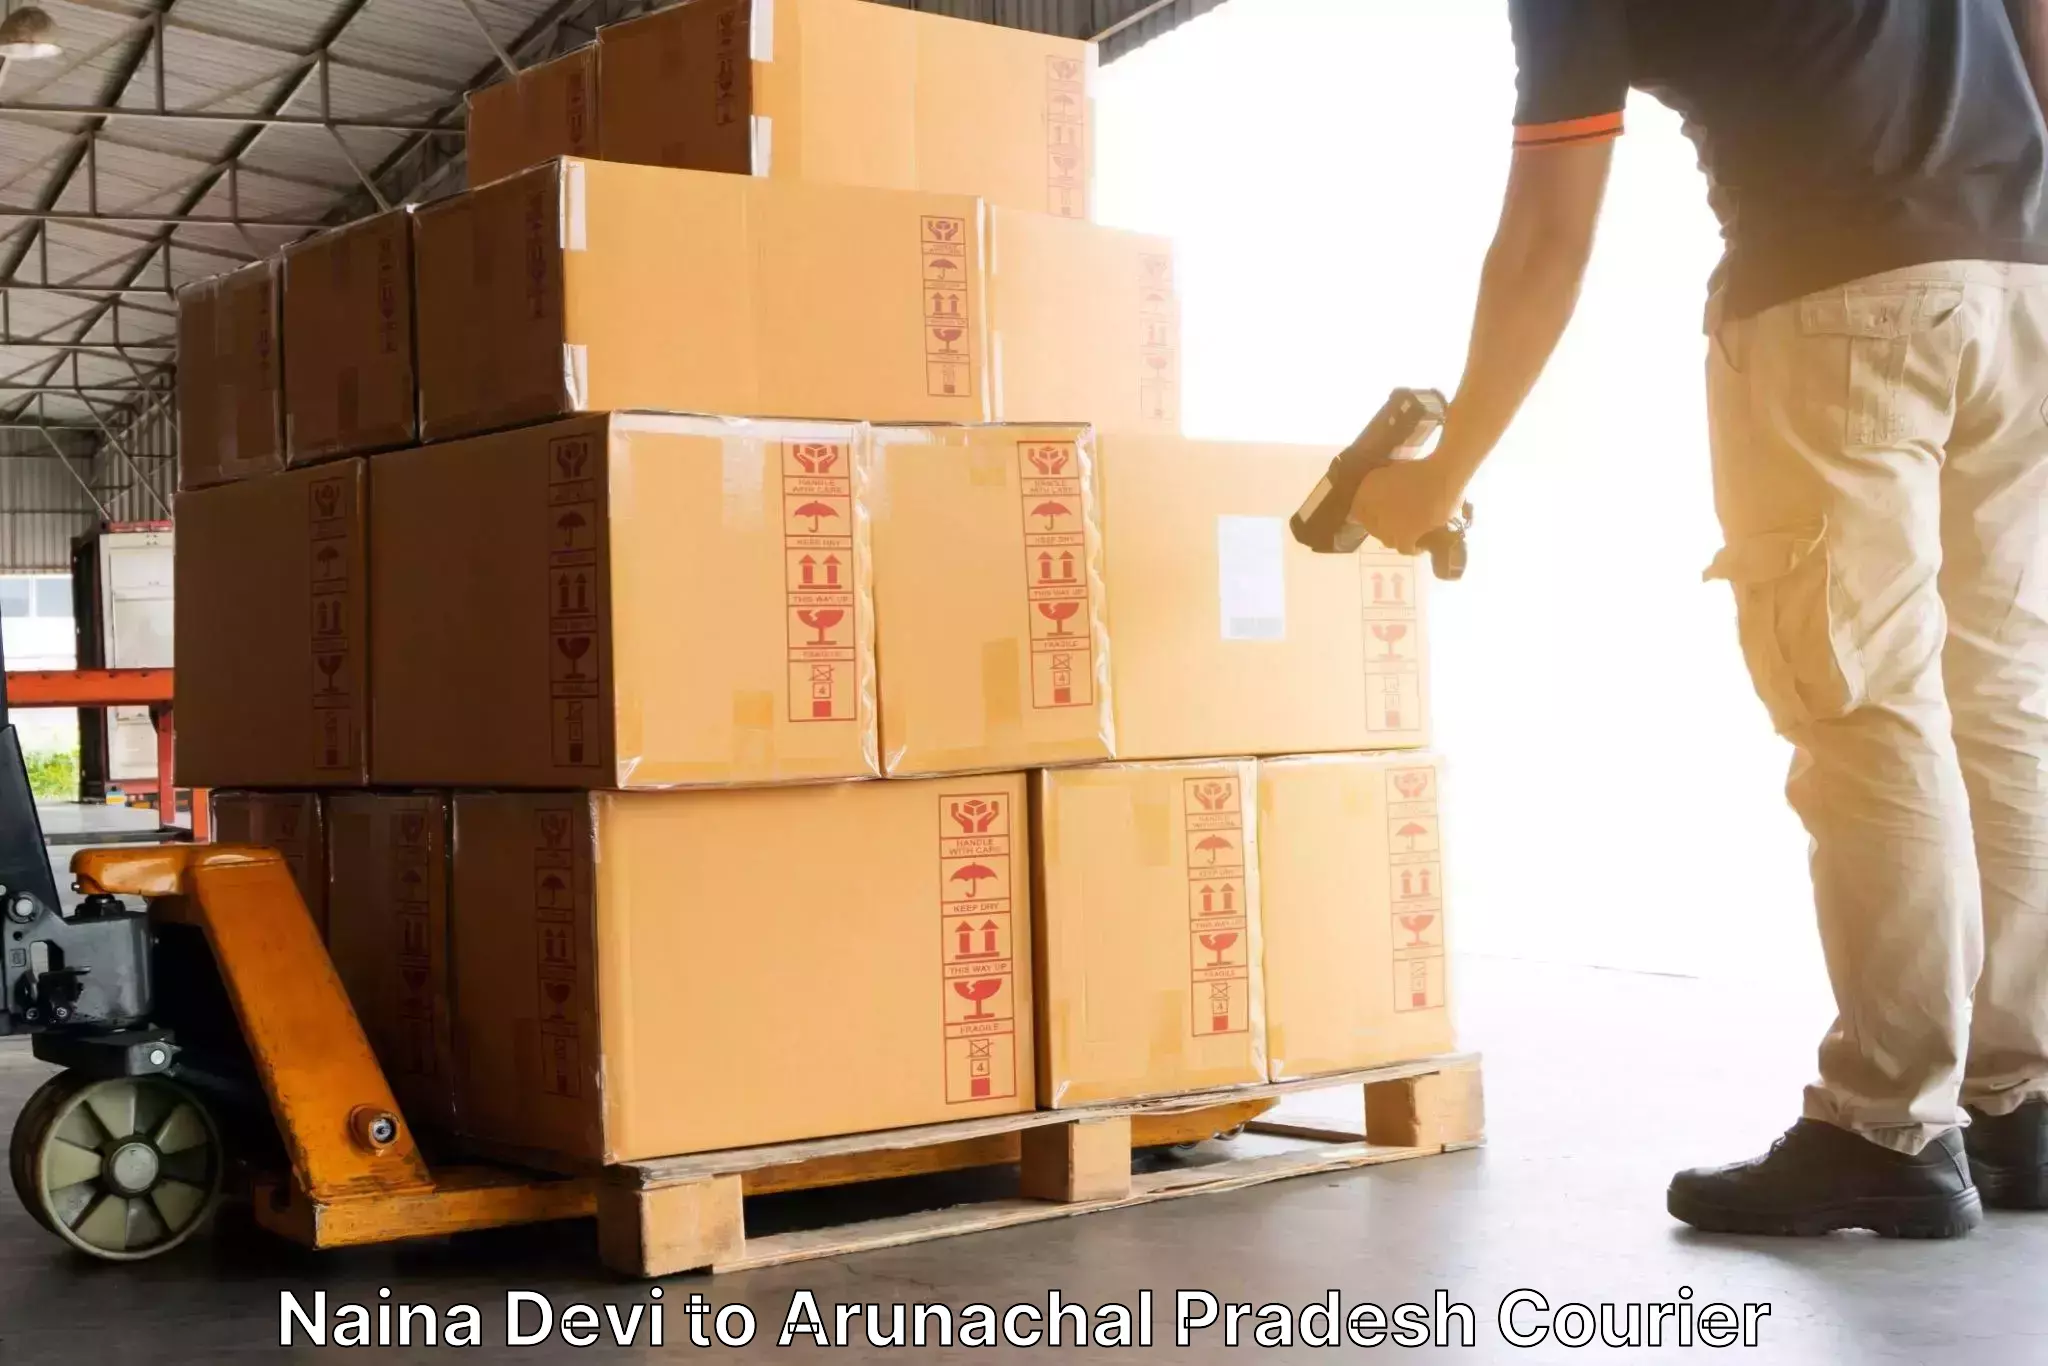 High-speed parcel service Naina Devi to Khonsa